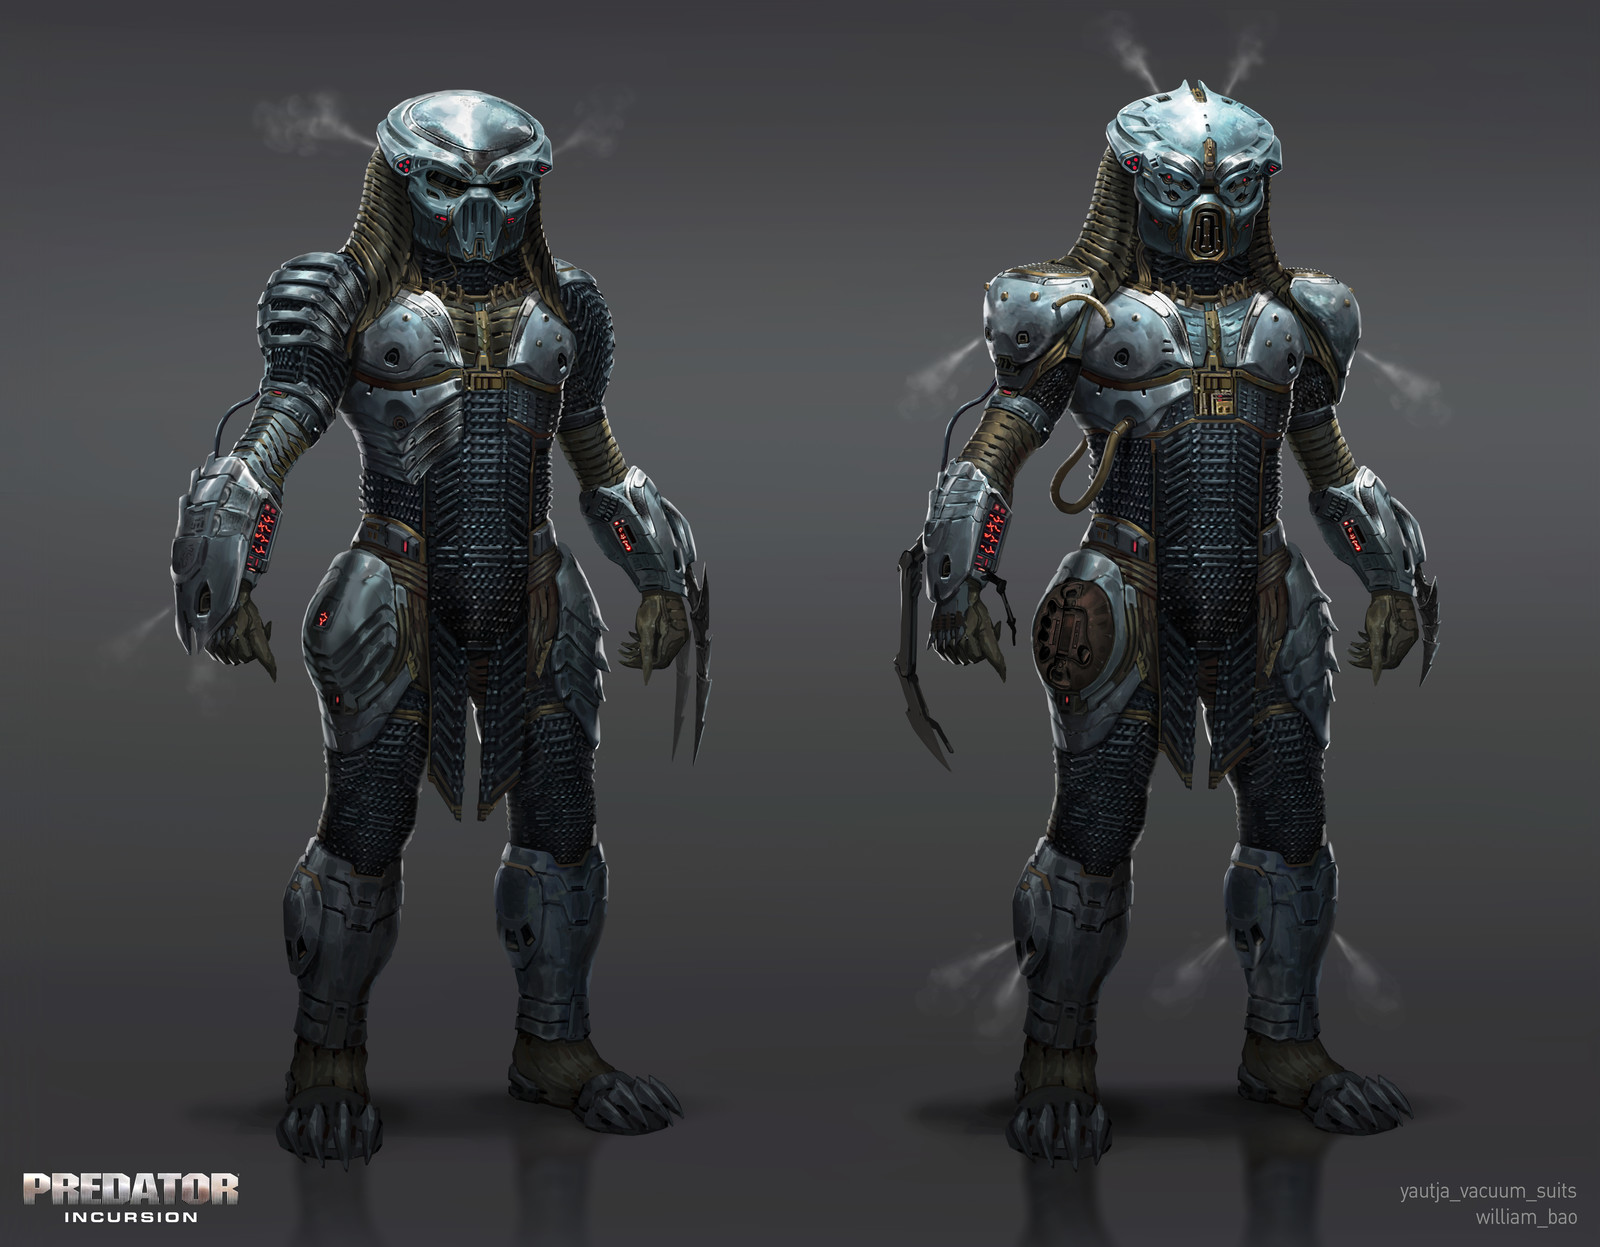 Predator: Incursion Vacuum Suit.